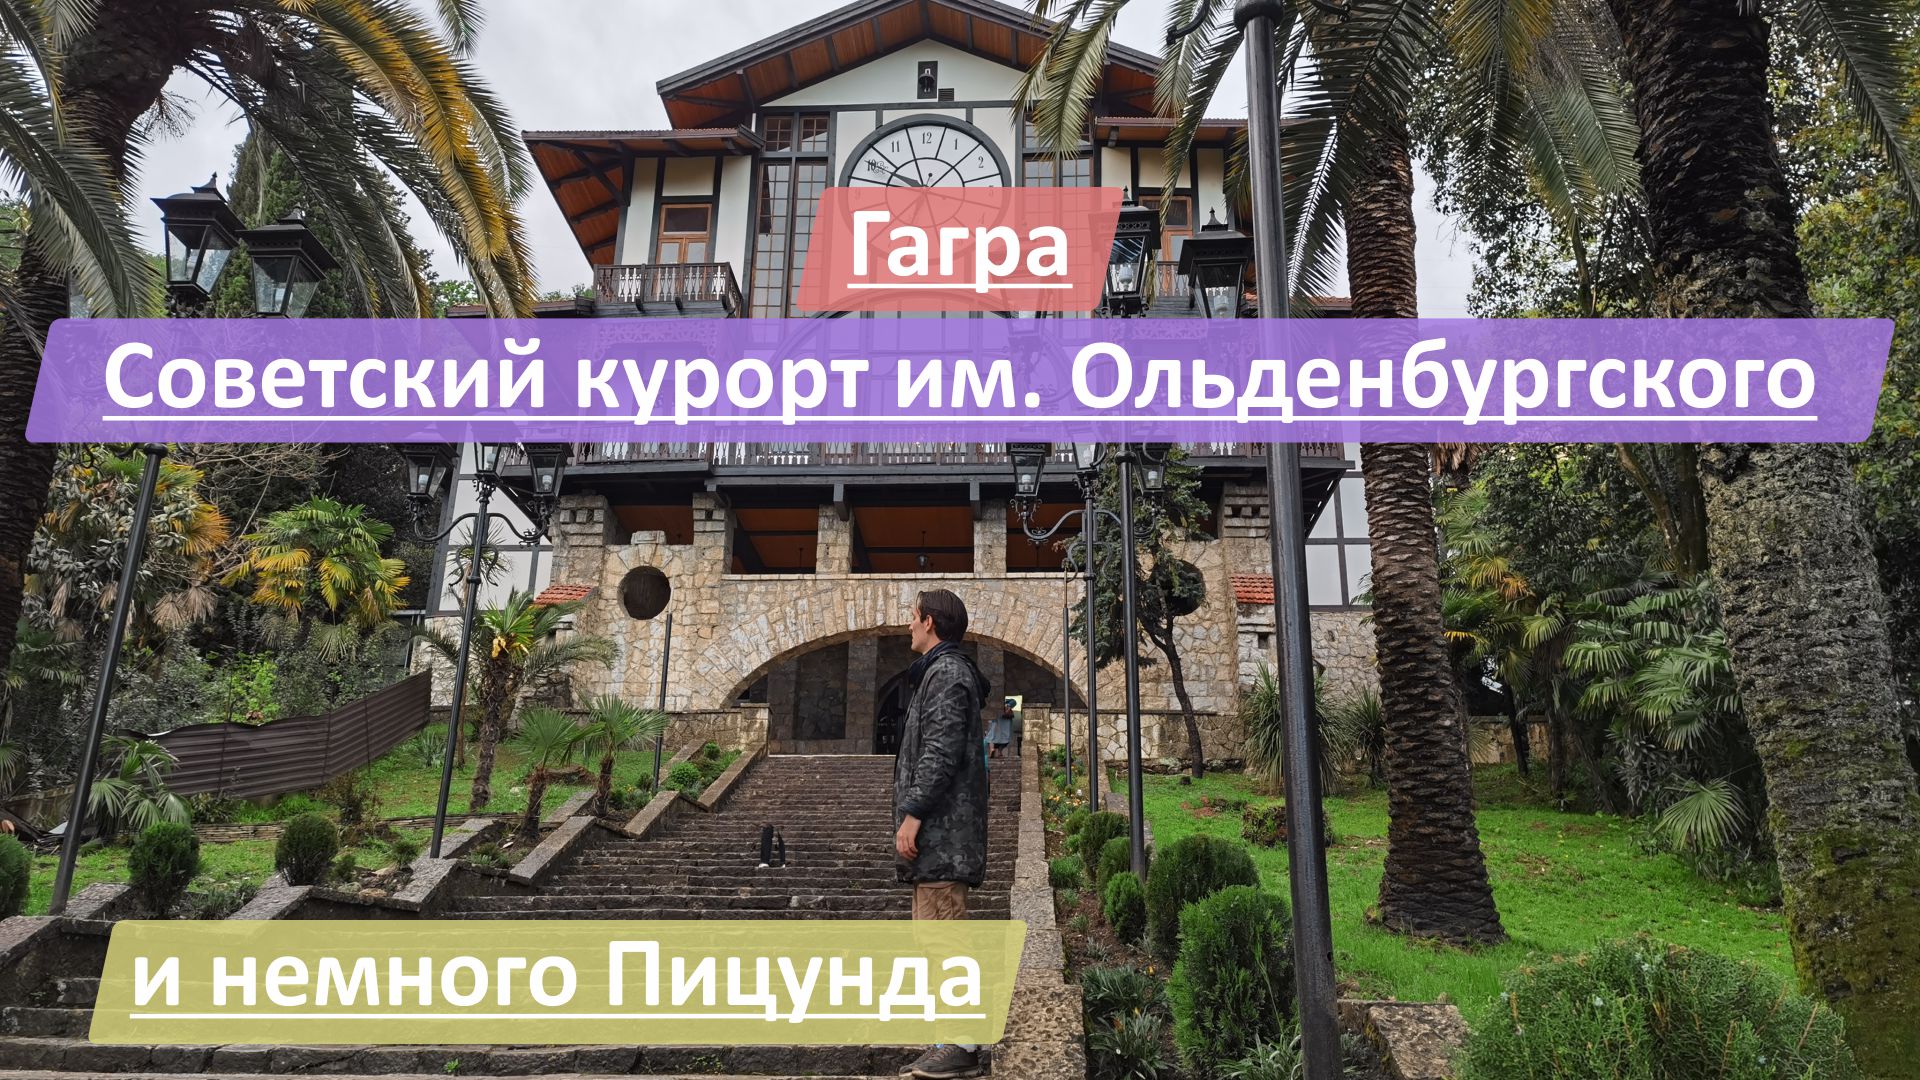 Гагра, Республика Абхазия | Советский курорт имени Ольденбургского